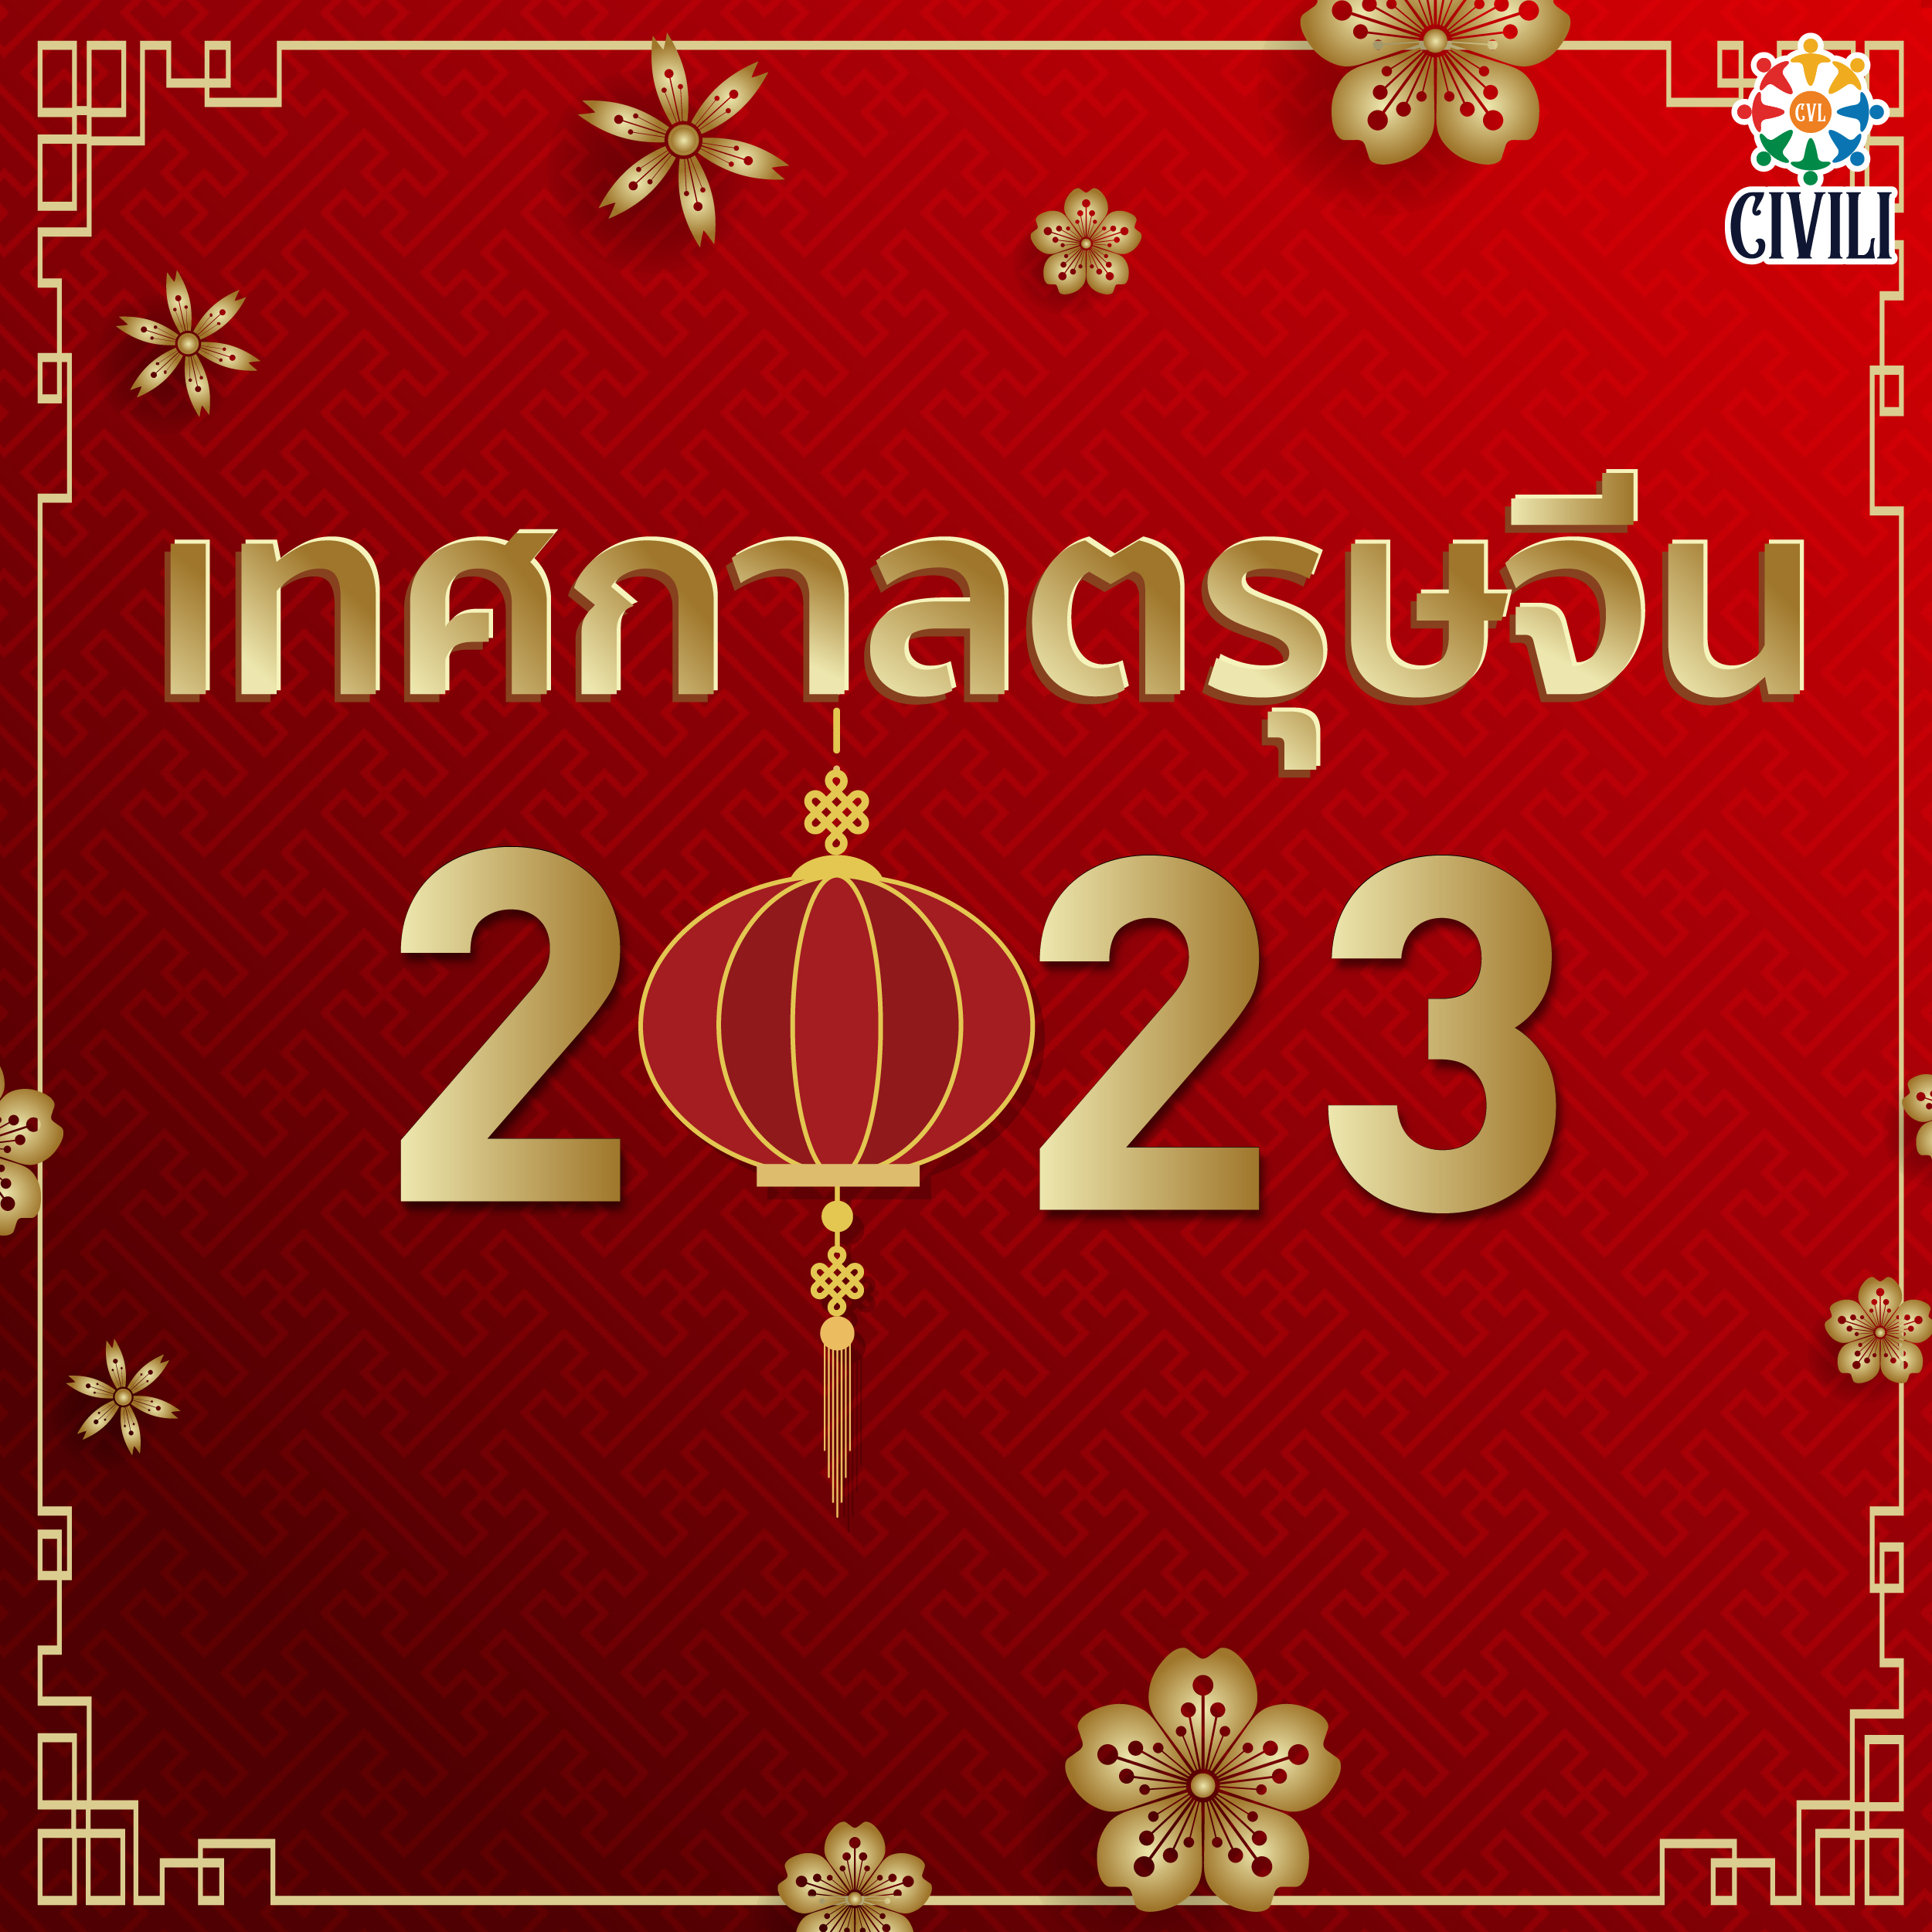 🧧 เทศกาลตรุษจีน หรือ ปีใหม่จีน เทศกาลสำคัญที่สุดของชาวจีน กำลังจะเริ่มขึ้นแล้ววว ..ไปเตรียมตัวกันเลย 🏮